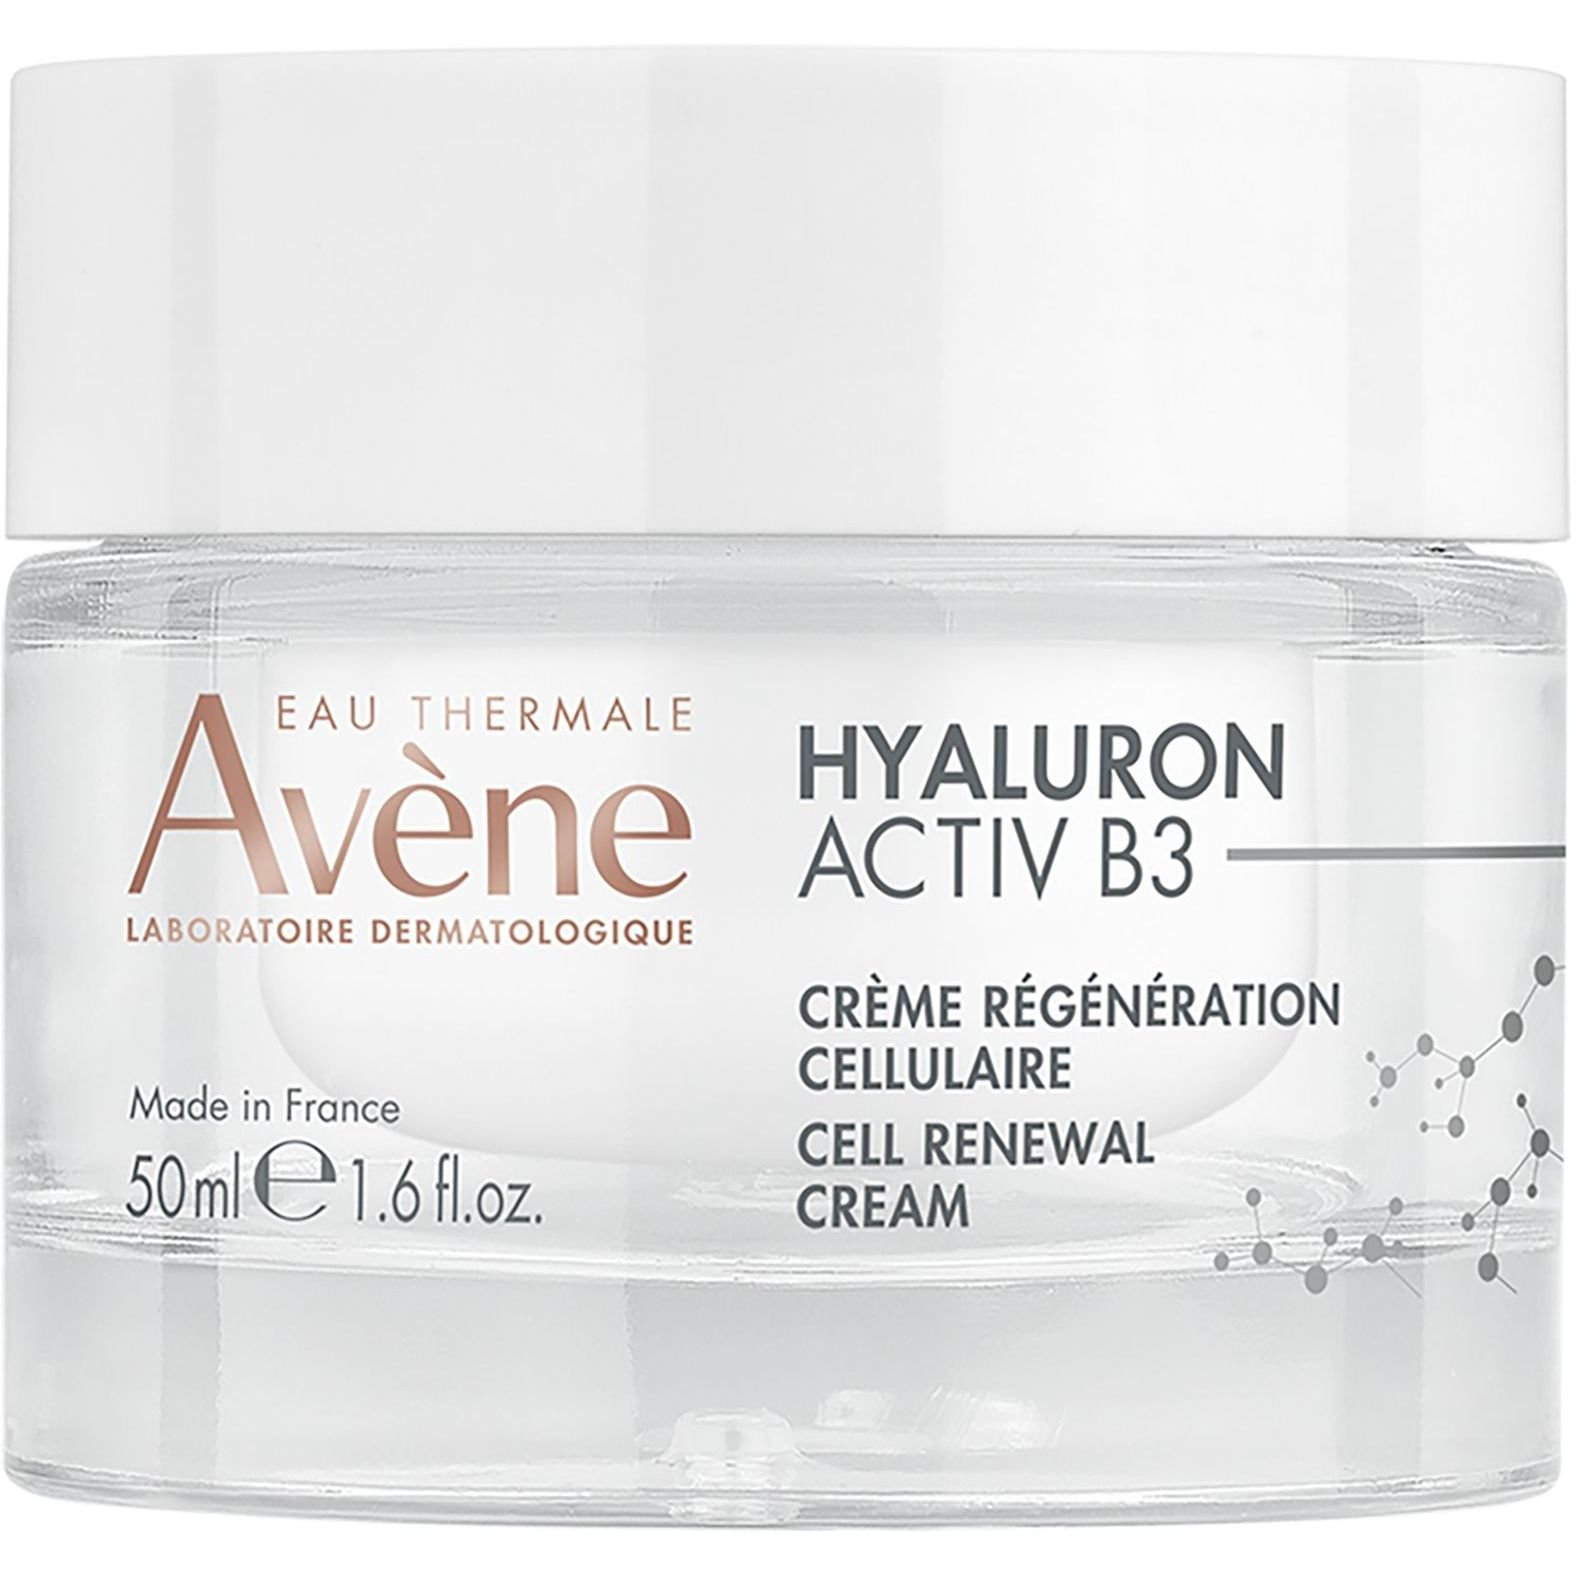 Крем для лица Avene Hyaluron Activ B3 Cellular Regenerating Cream Регенерации клеток 50 мл - фото 1